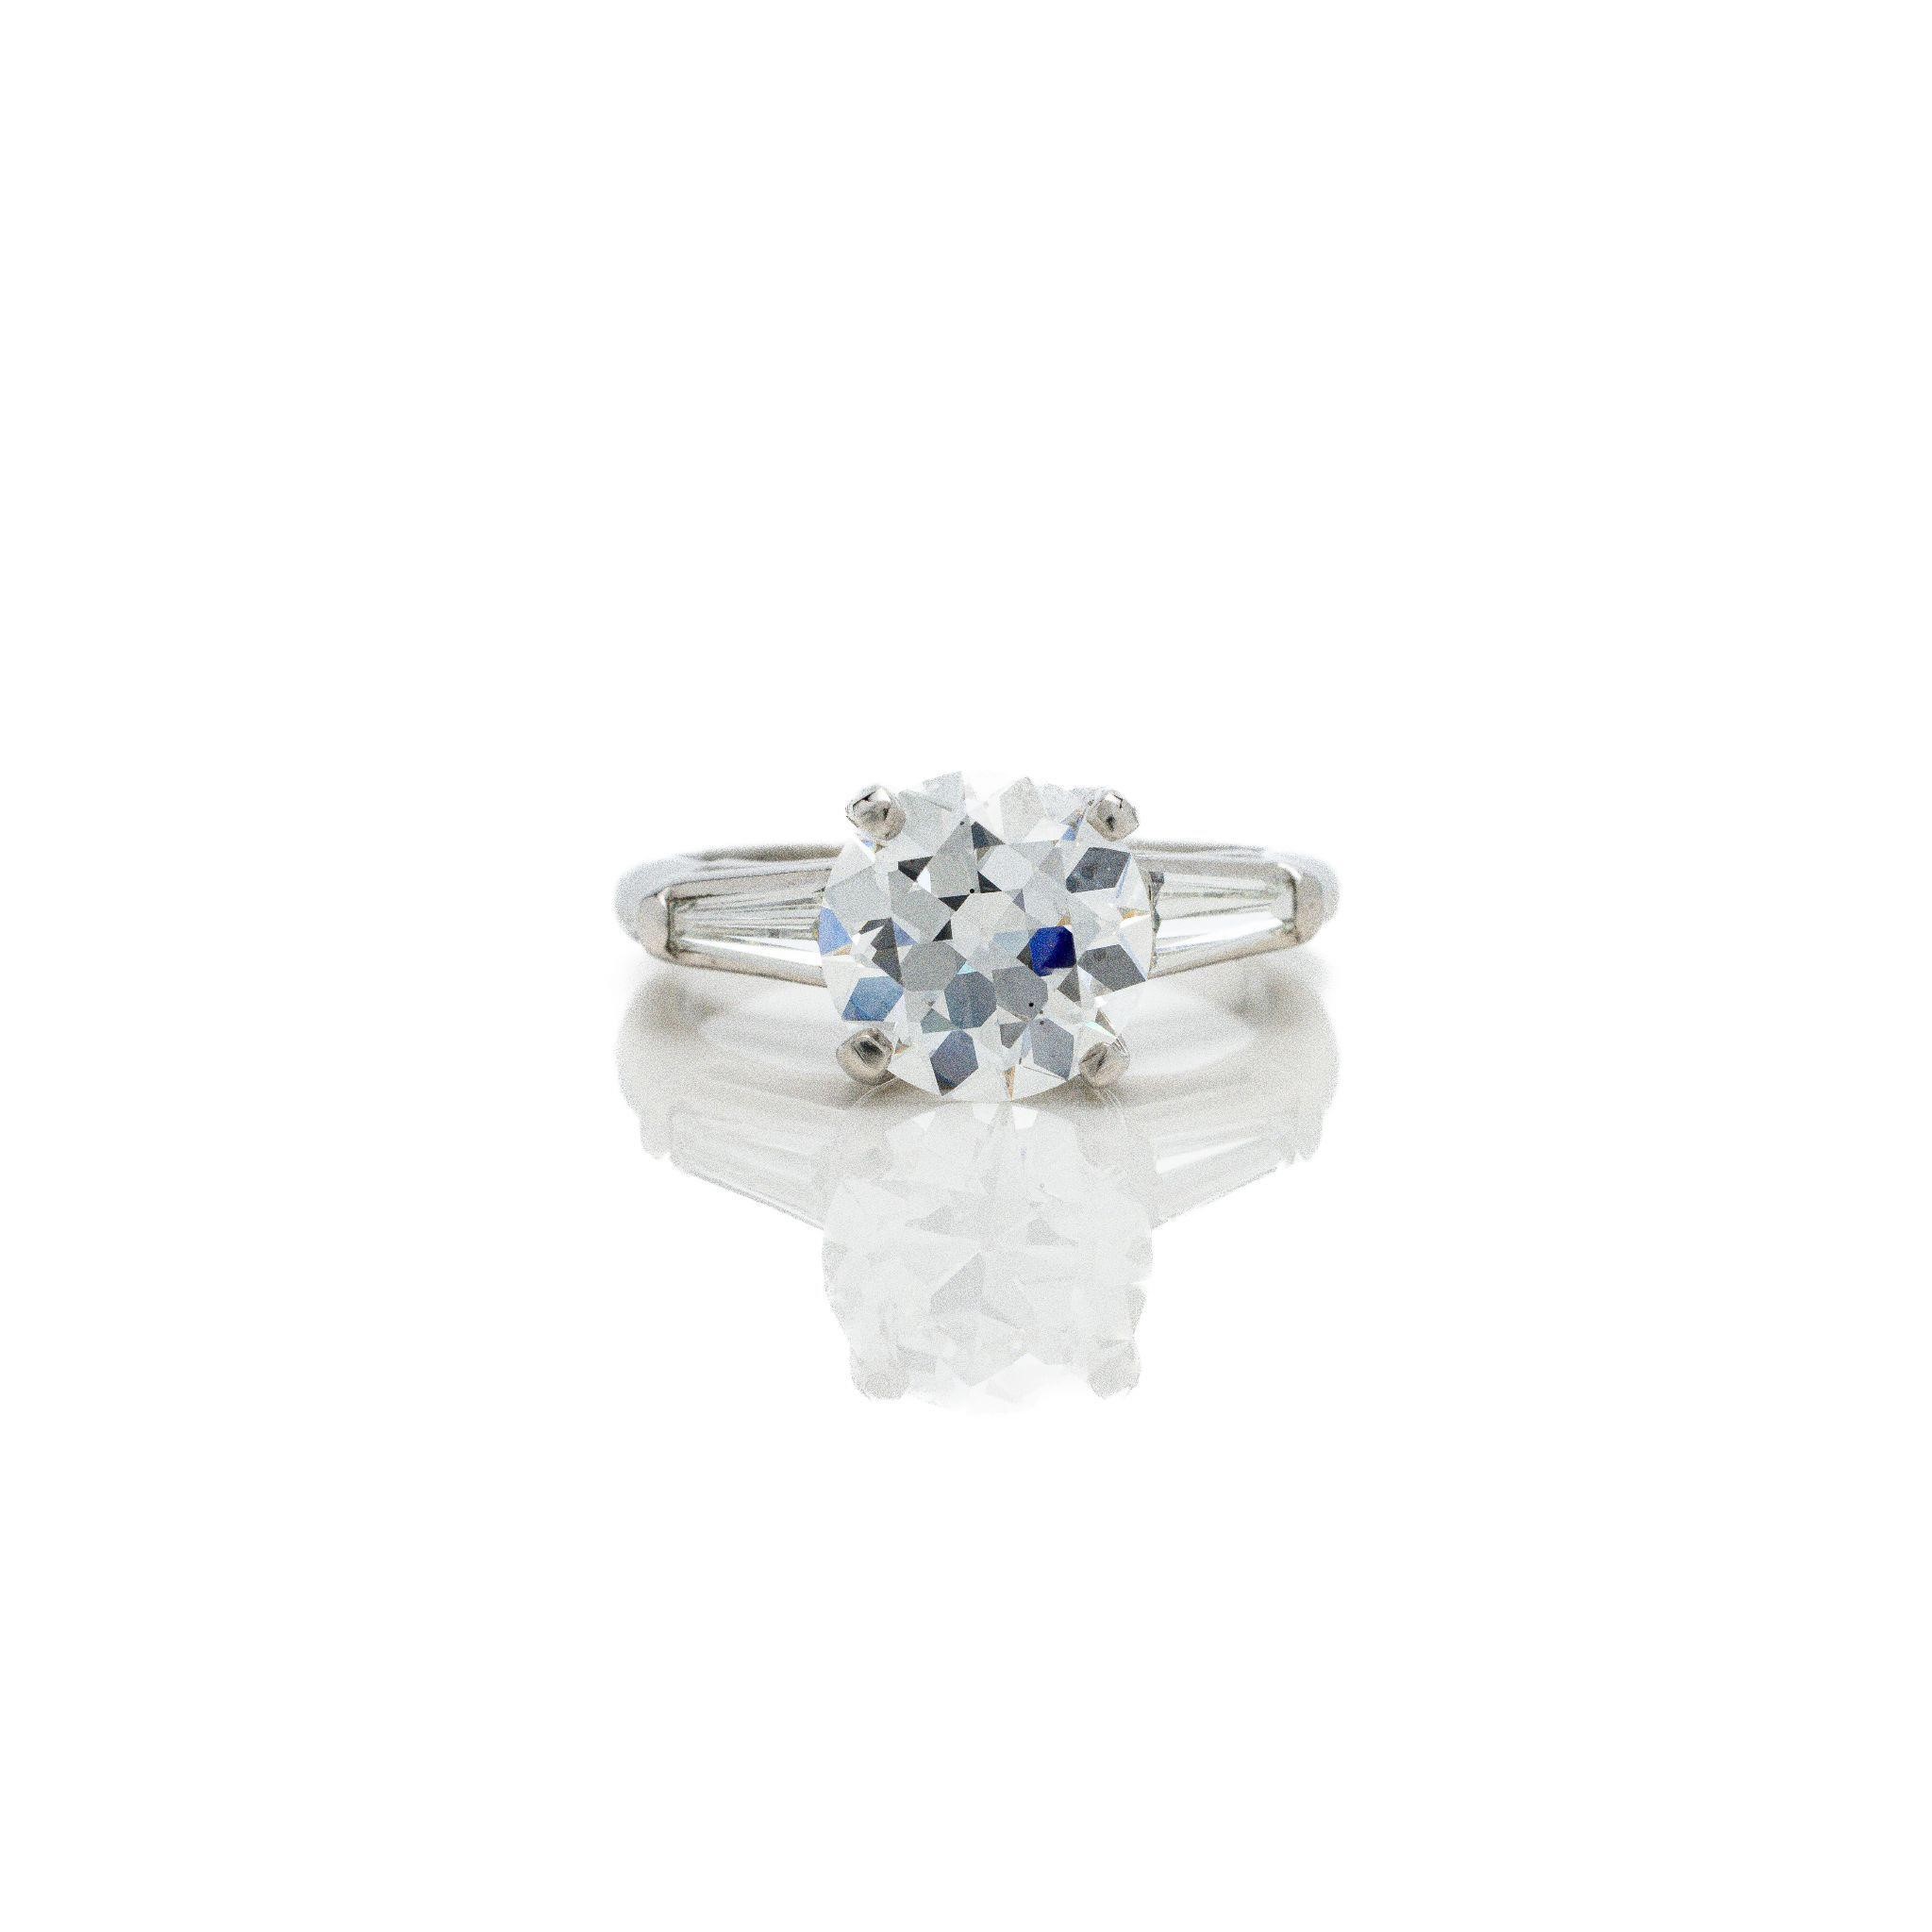 Antique Platinum 2.42 ctw Diamond Engagement Ring